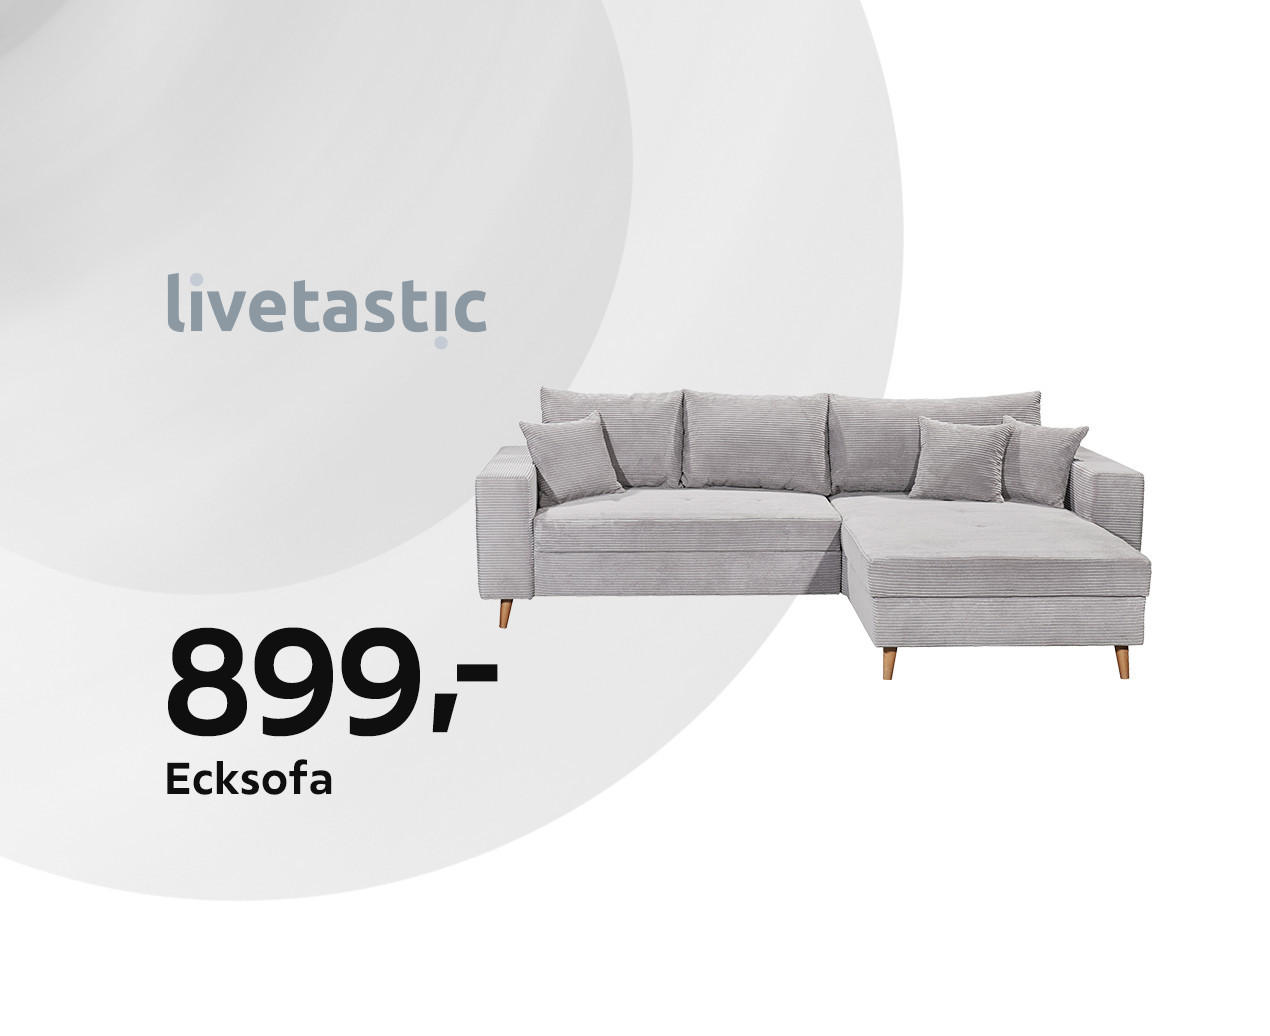 Ecksofa online kaufen